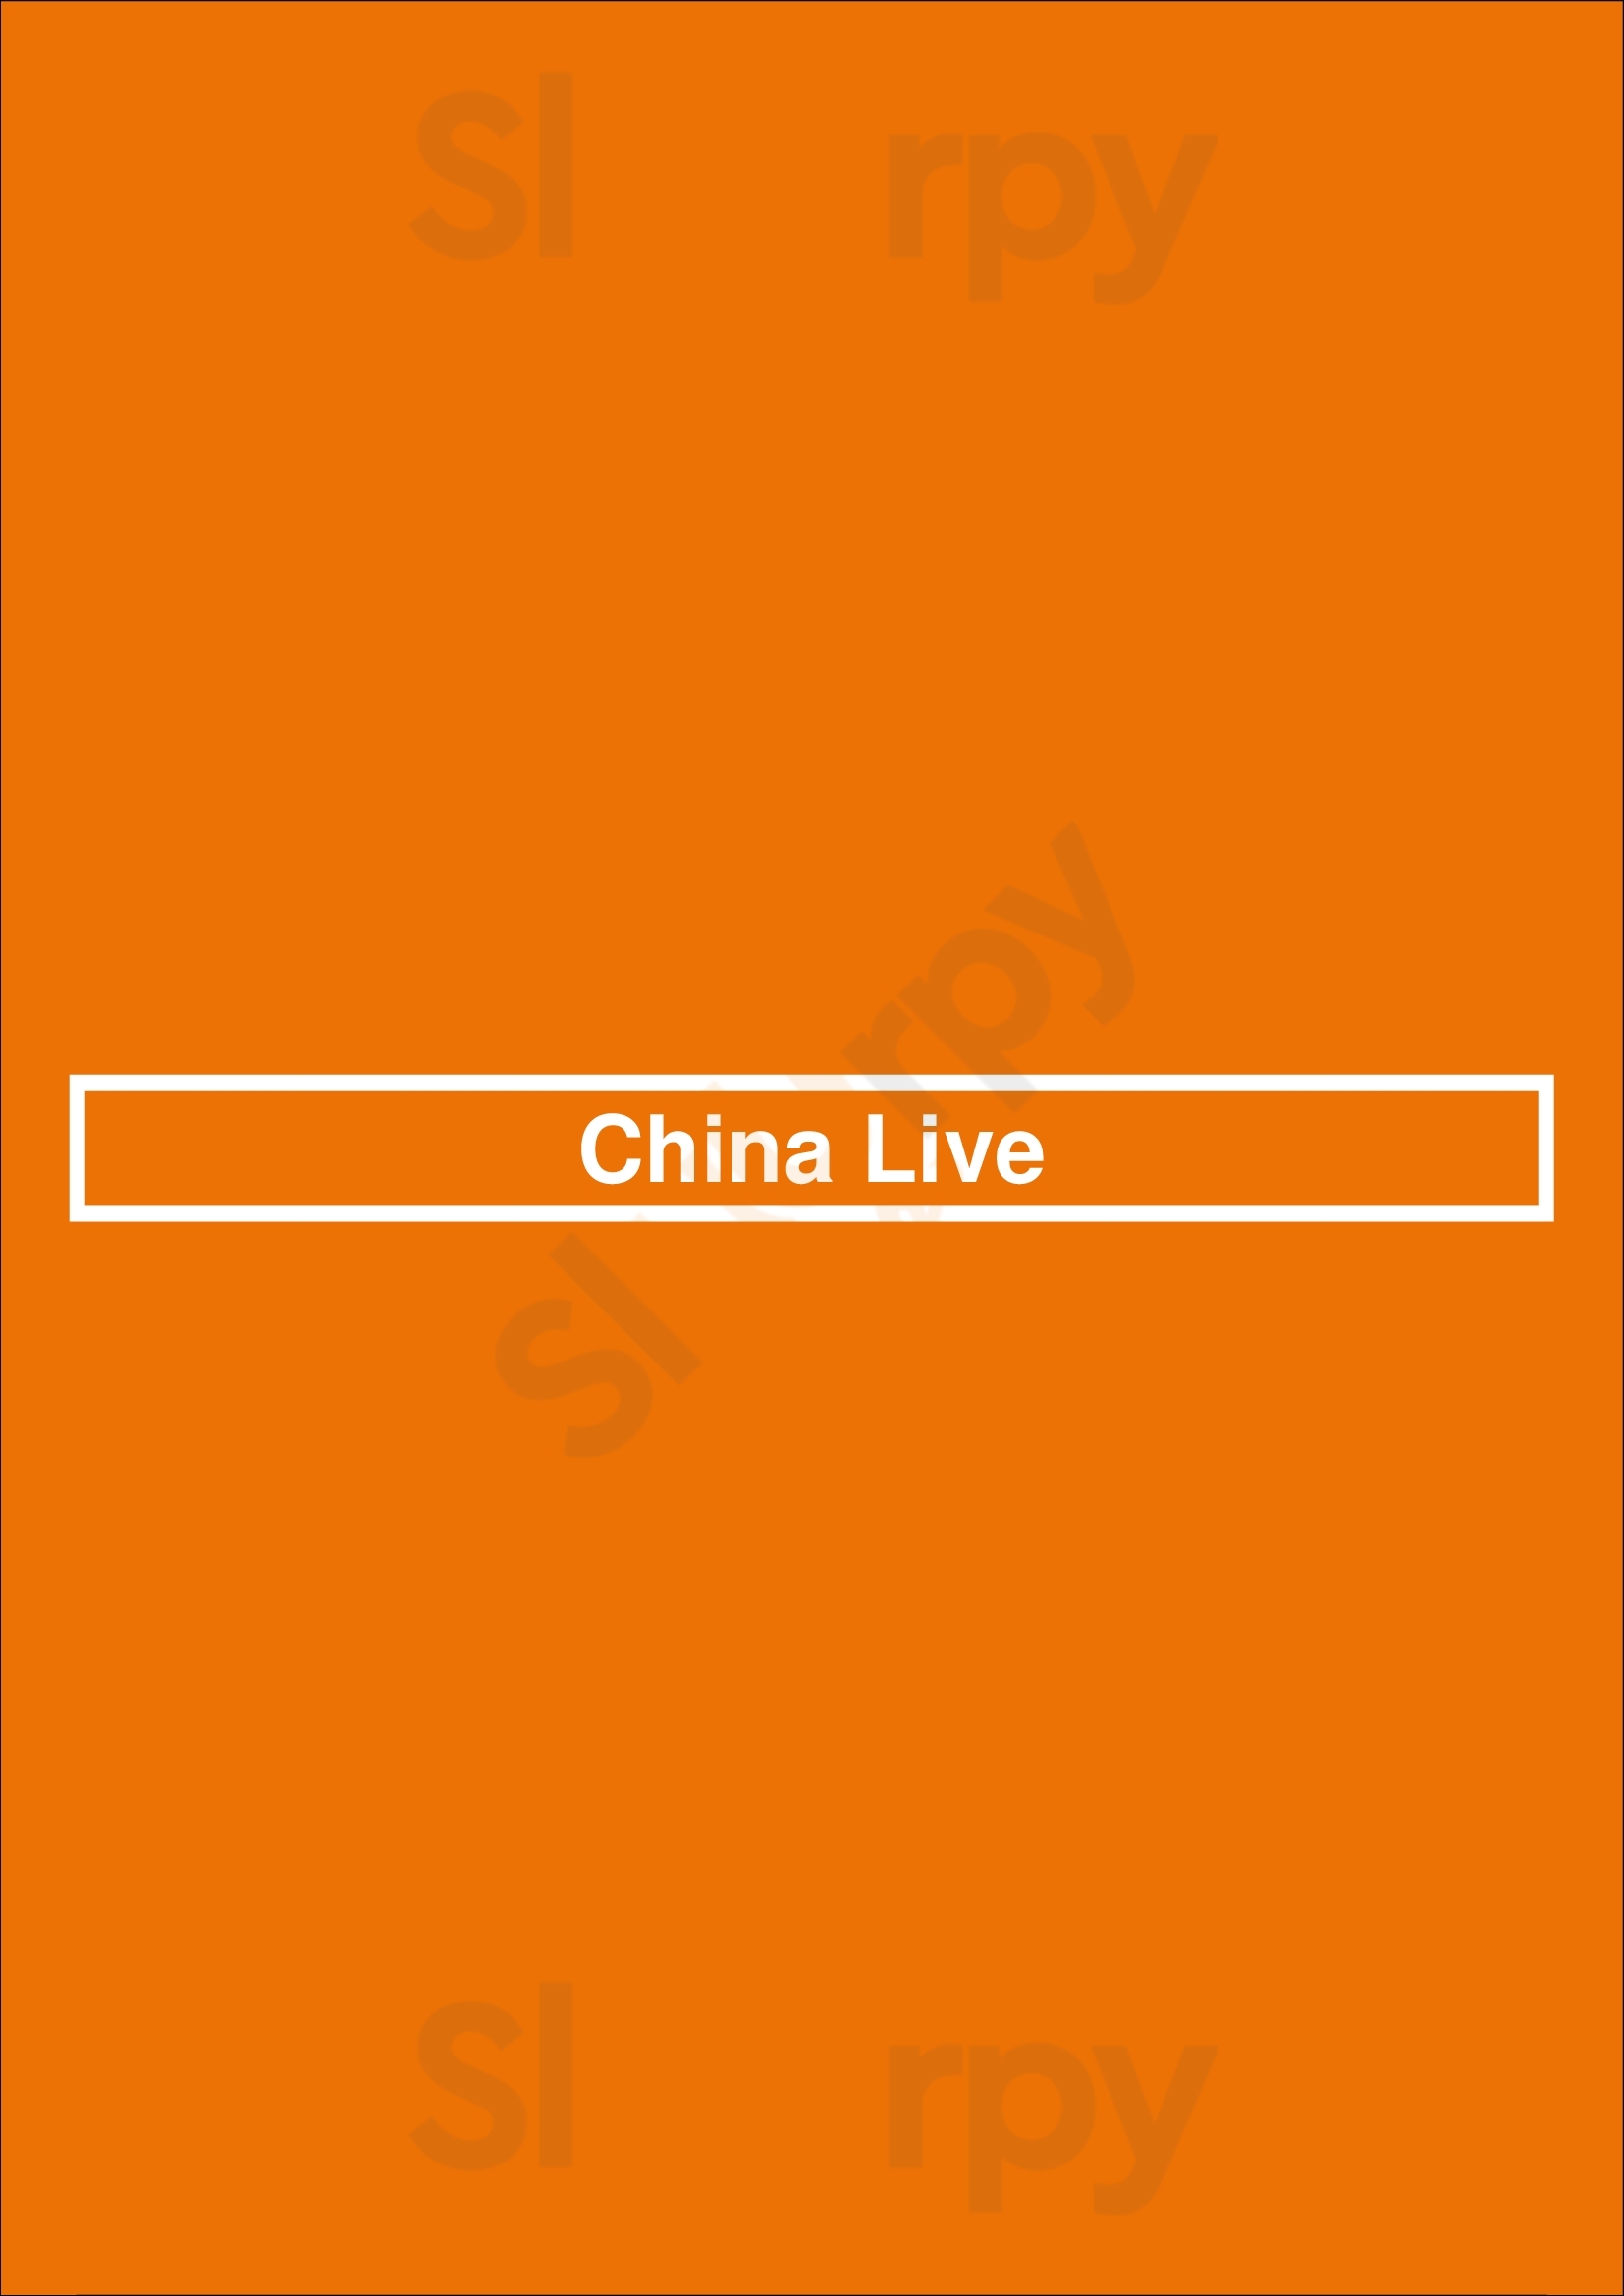 China Live San Francisco Menu - 1